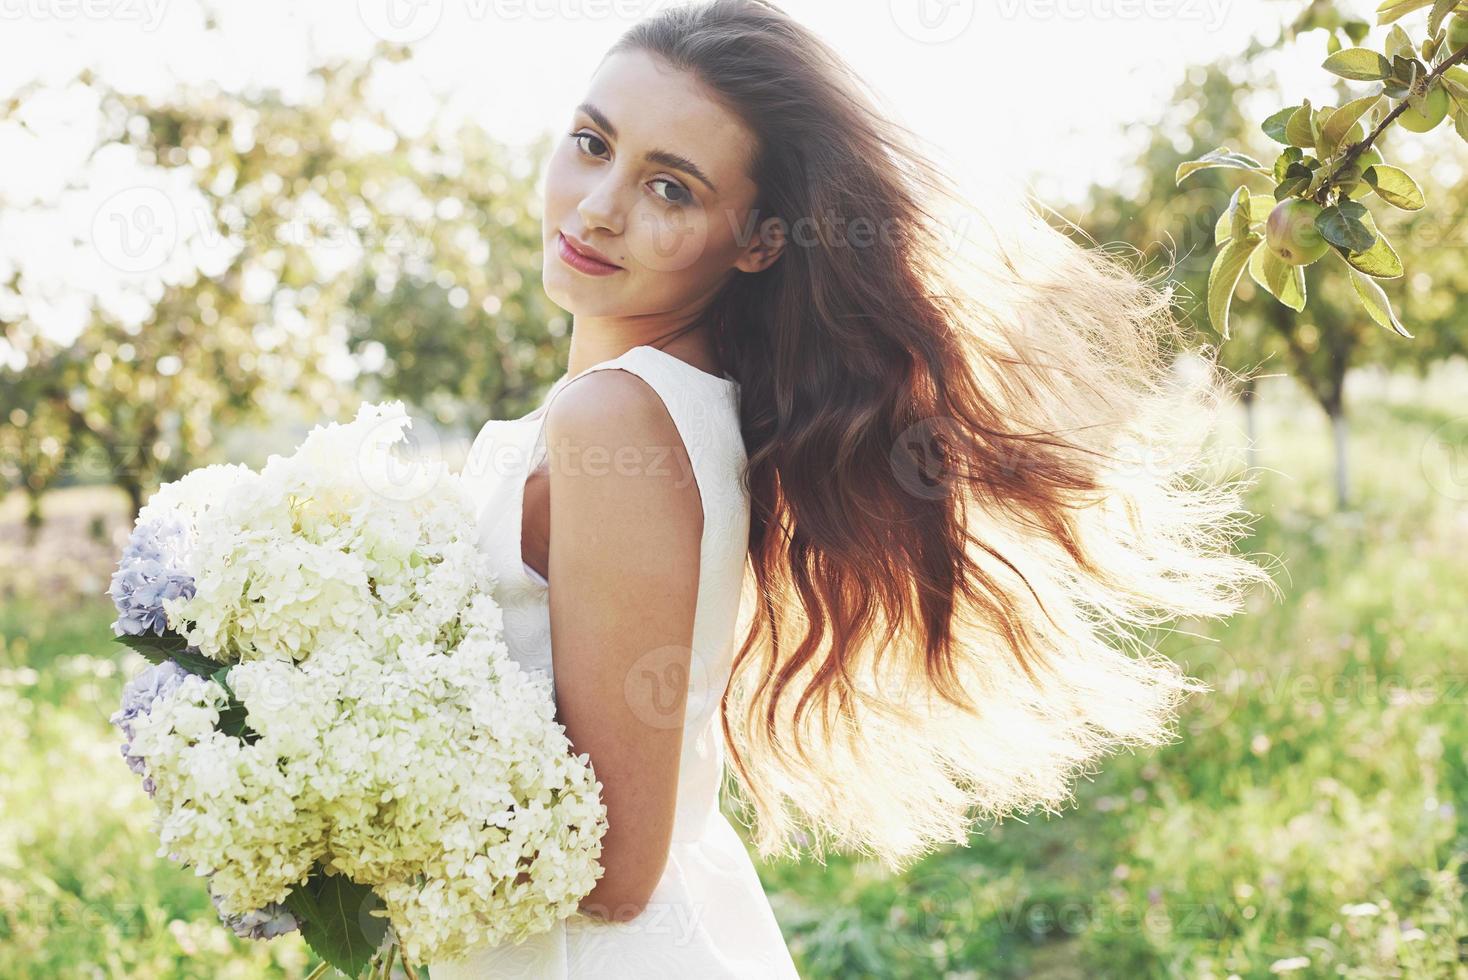 uma linda jovem em um vestido branco leve e um buquê de flores de verão faz um belo dia no jardim foto